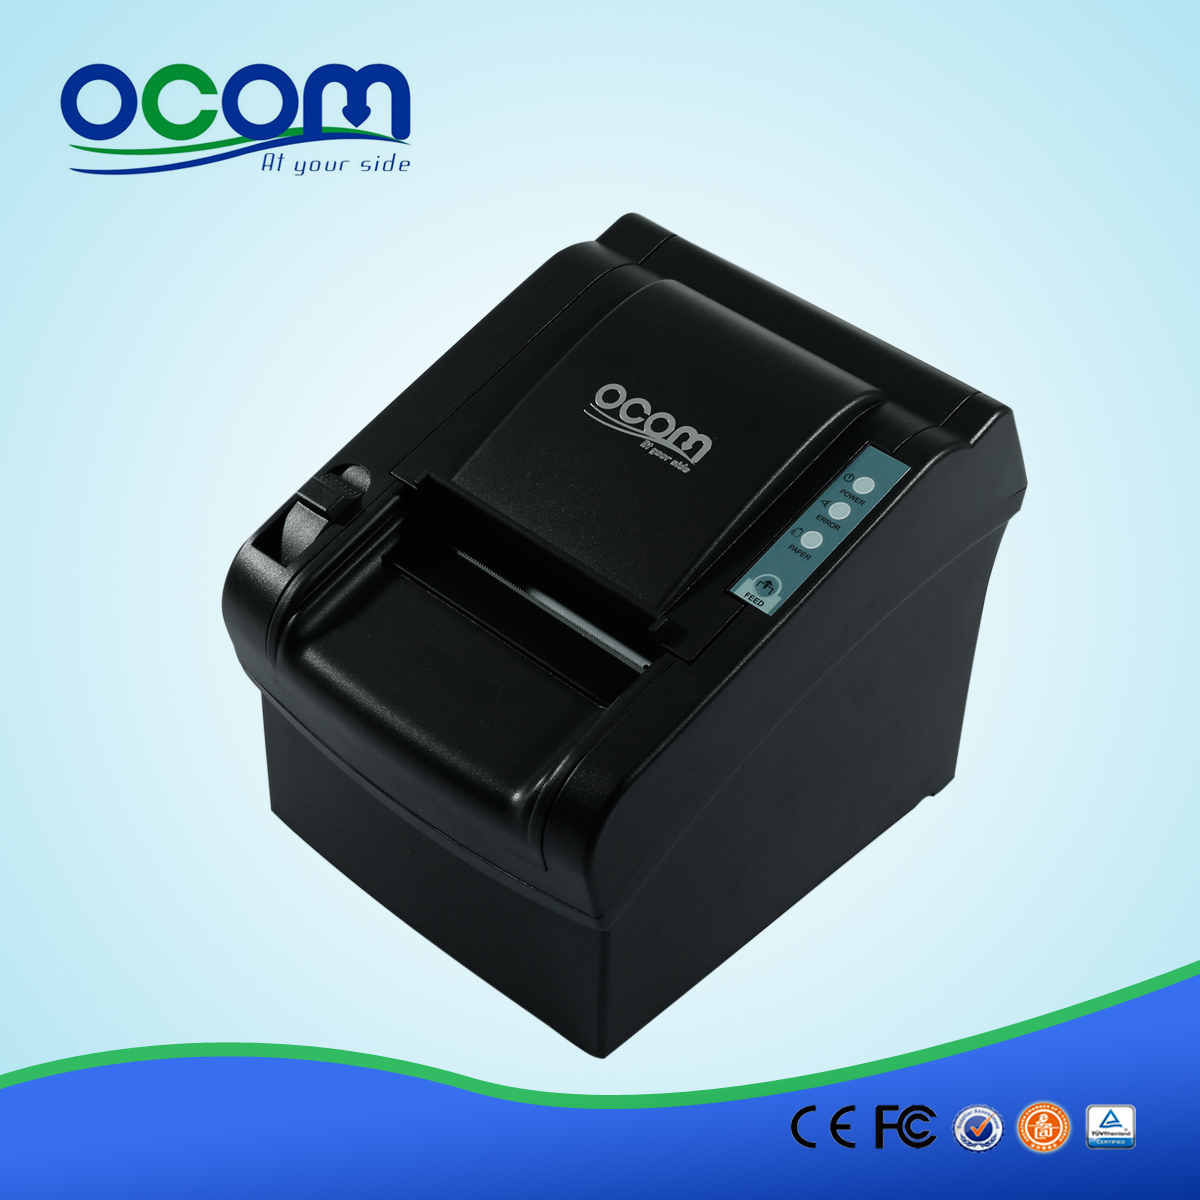 80毫米手动切刀热敏票据打印机 -  OCPP-802